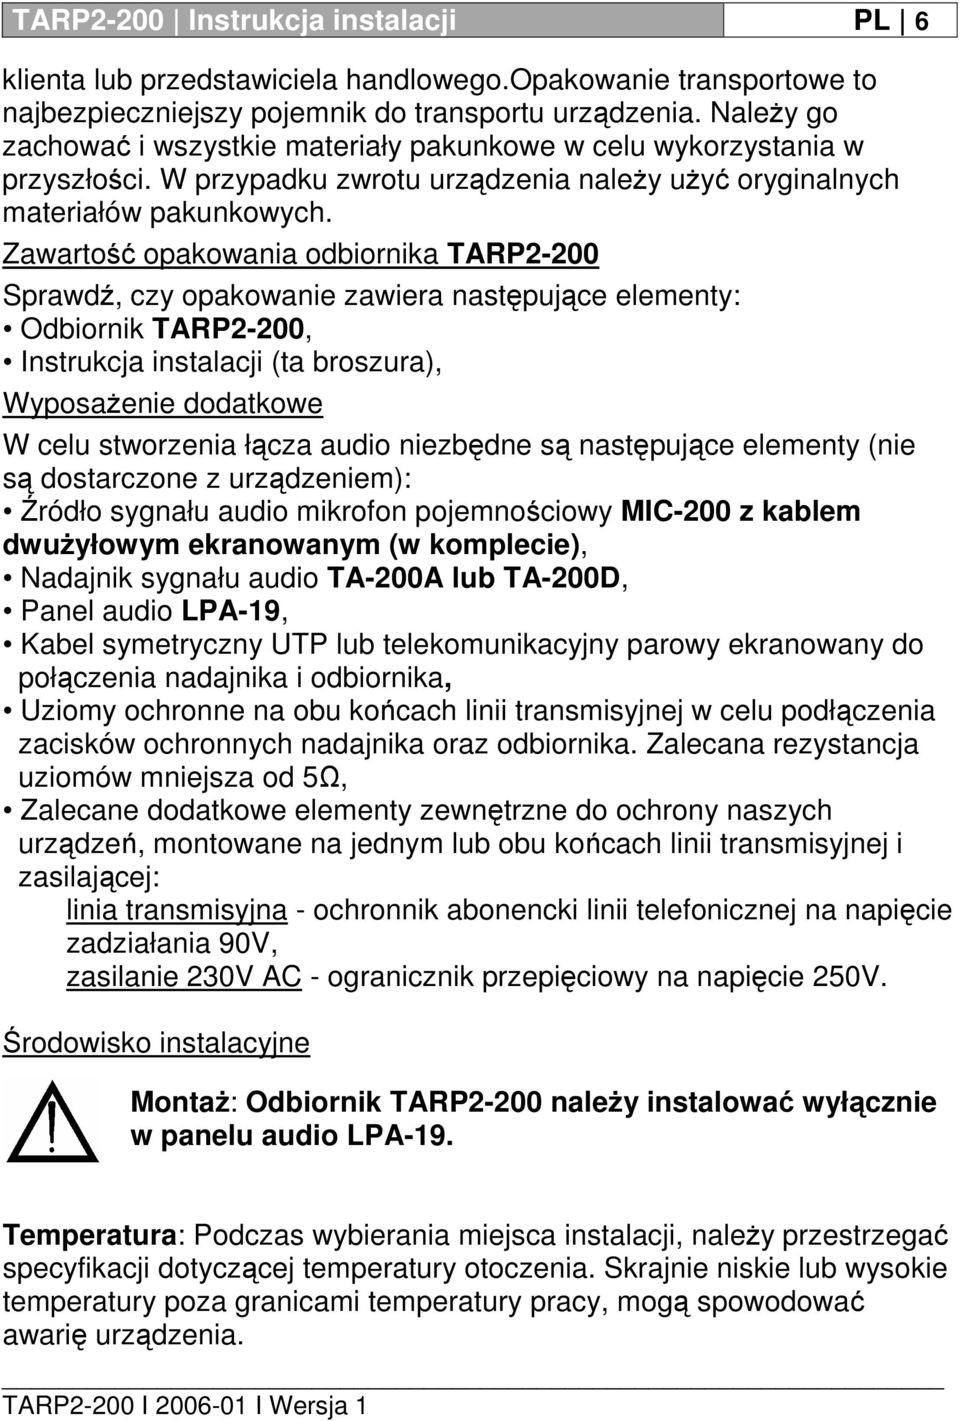 Zawartość opakowania odbiornika TARP2-200 Sprawdź, czy opakowanie zawiera następujące elementy: Odbiornik TARP2-200, Instrukcja instalacji (ta broszura), Wyposażenie dodatkowe W celu stworzenia łącza